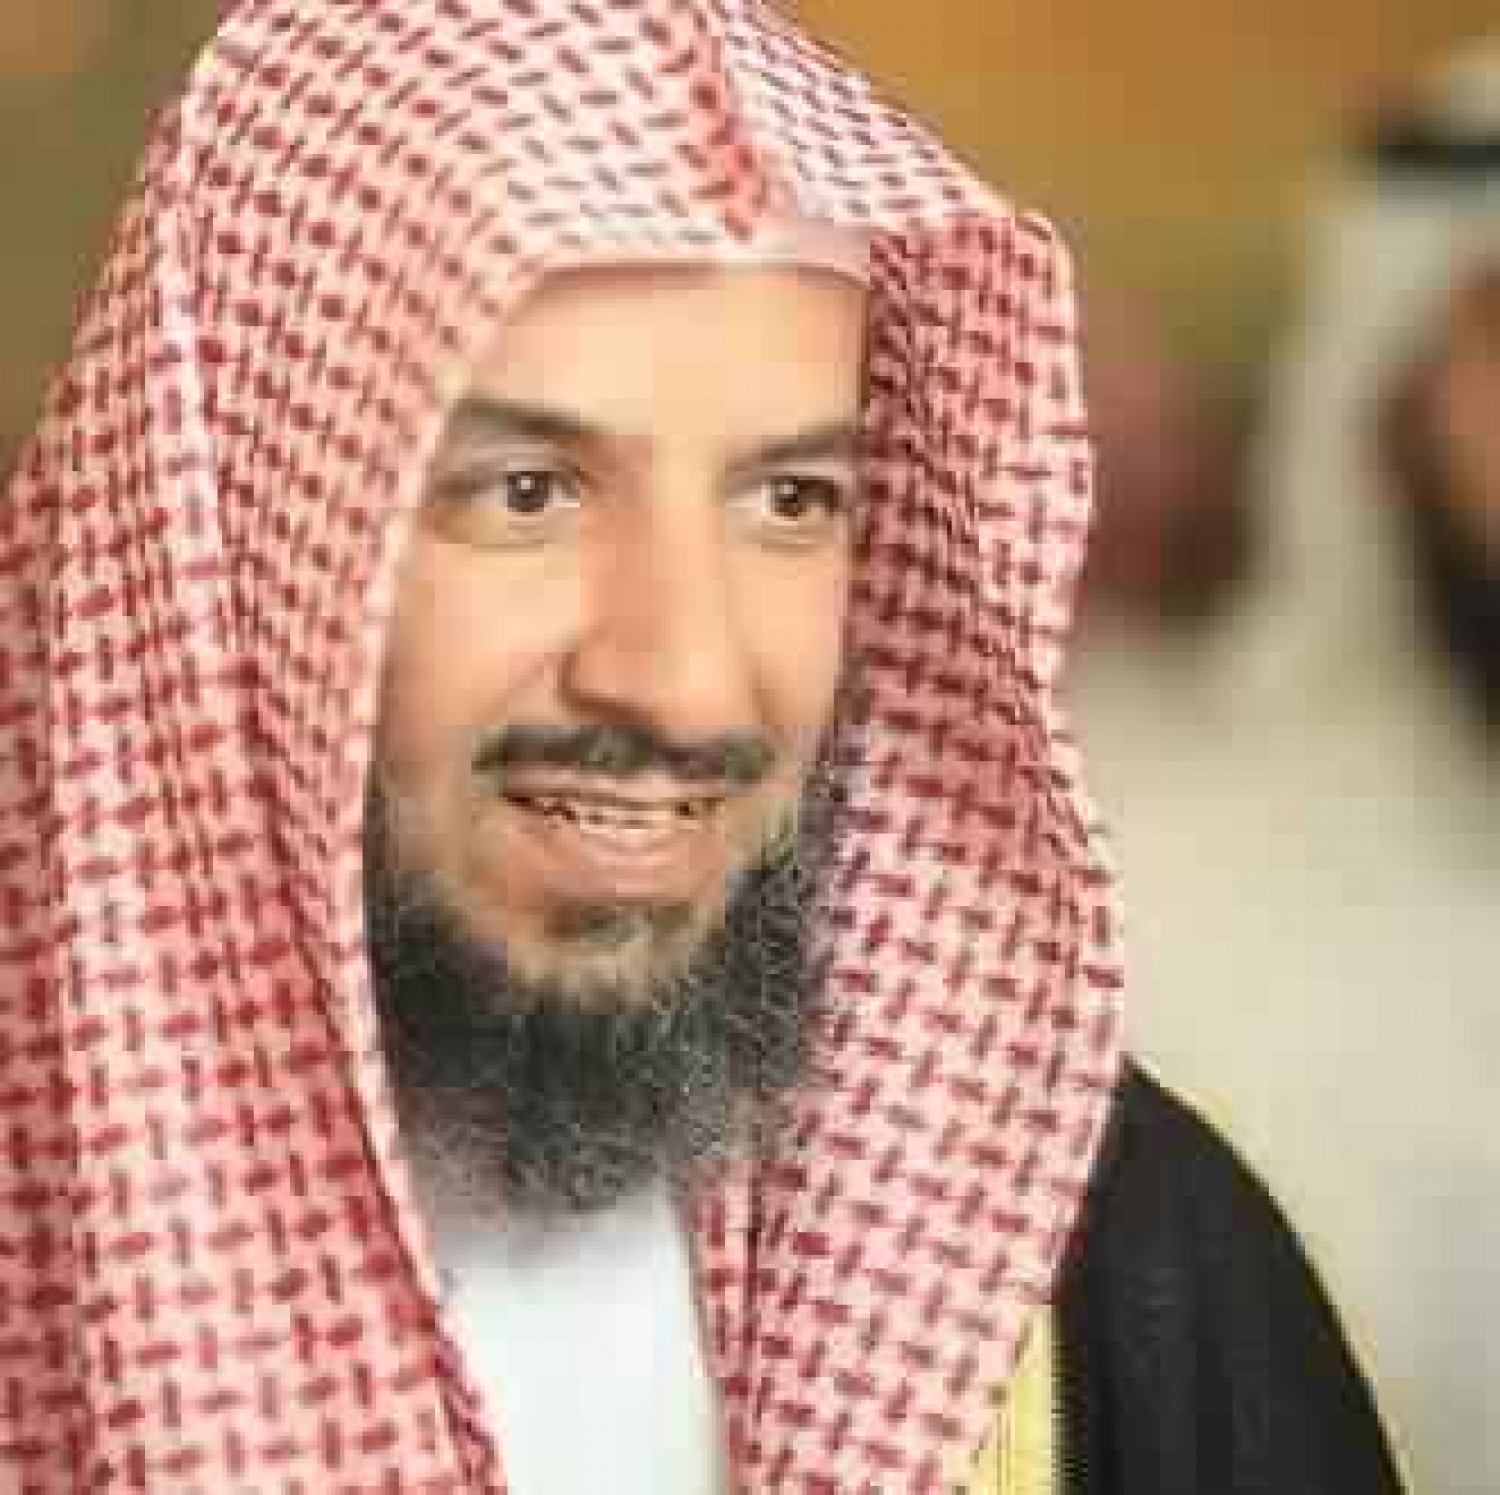   الشثري: مواقف السعودية راسخة بخدمة المسلمين ونشر الوسطية والاعتدال